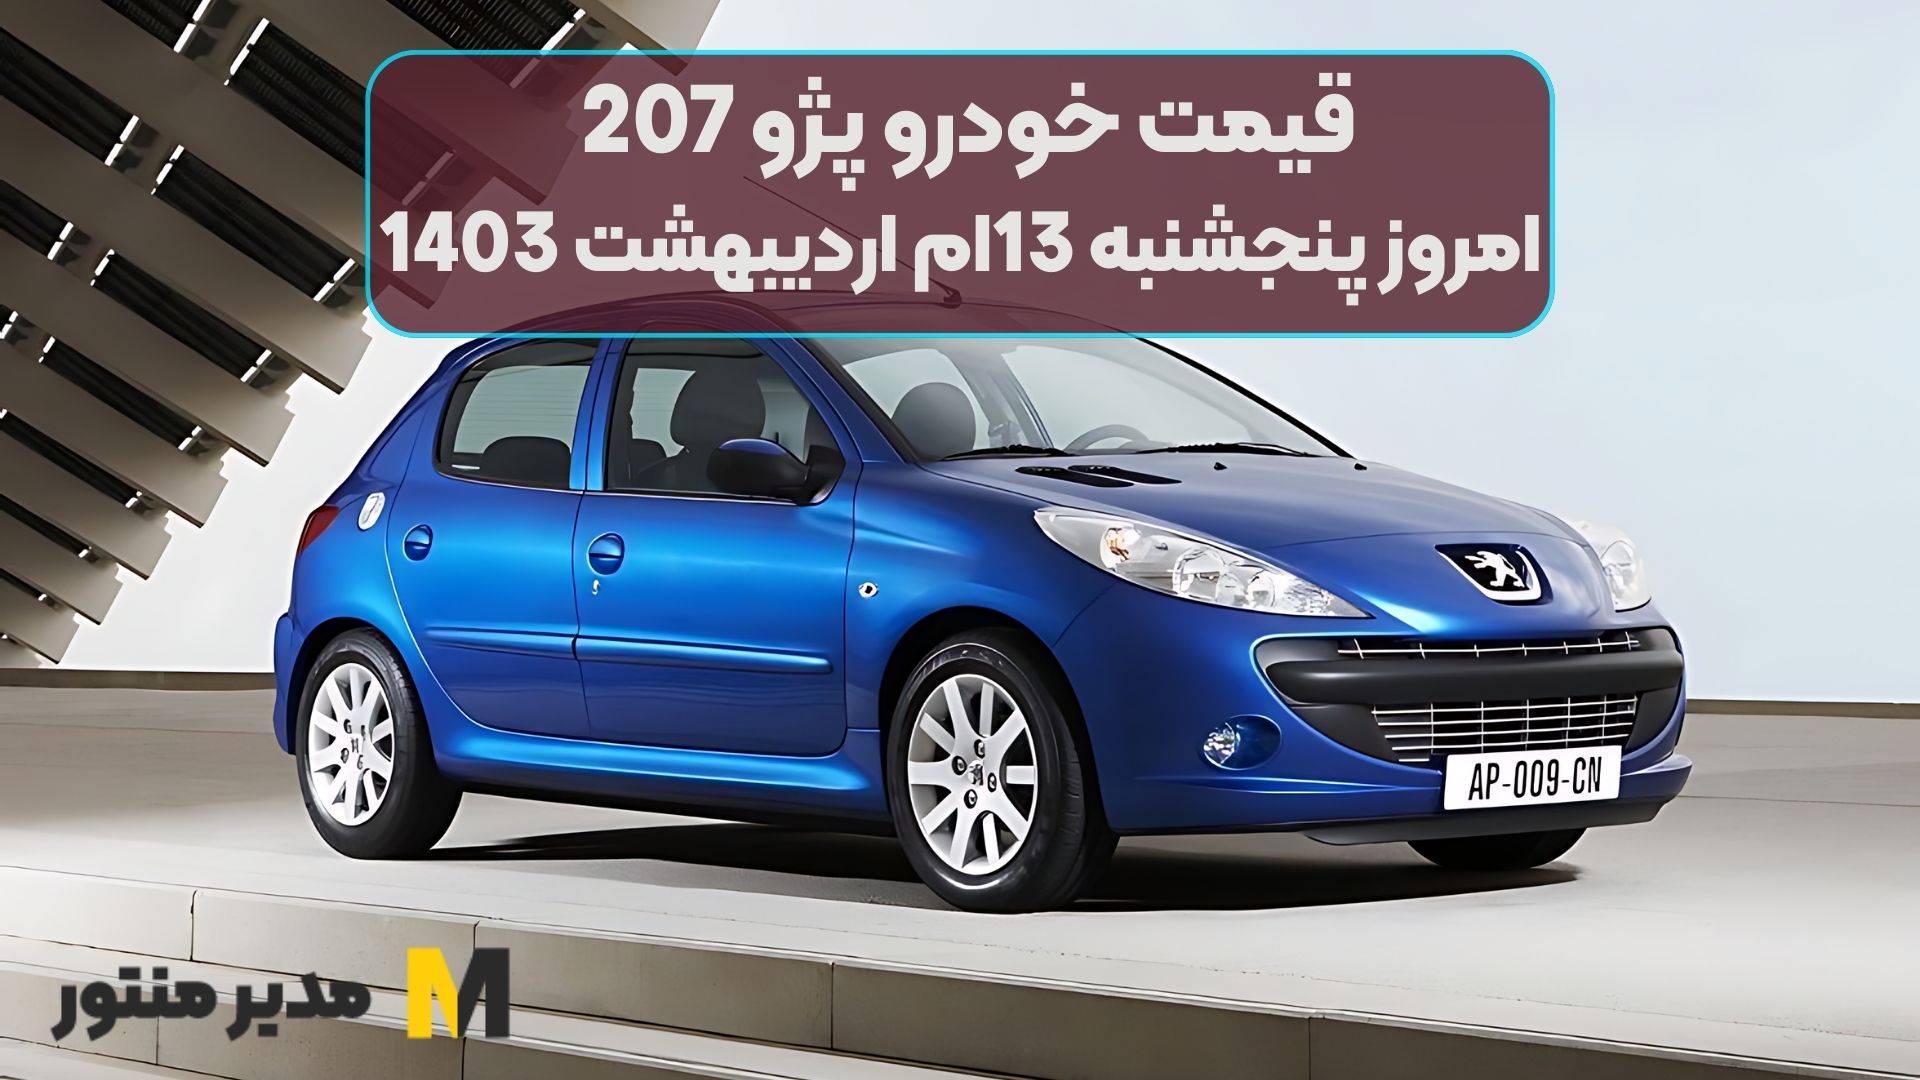 قیمت خودرو پژو 207 امروز پنجشنبه 13ام اردیبهشت 1403